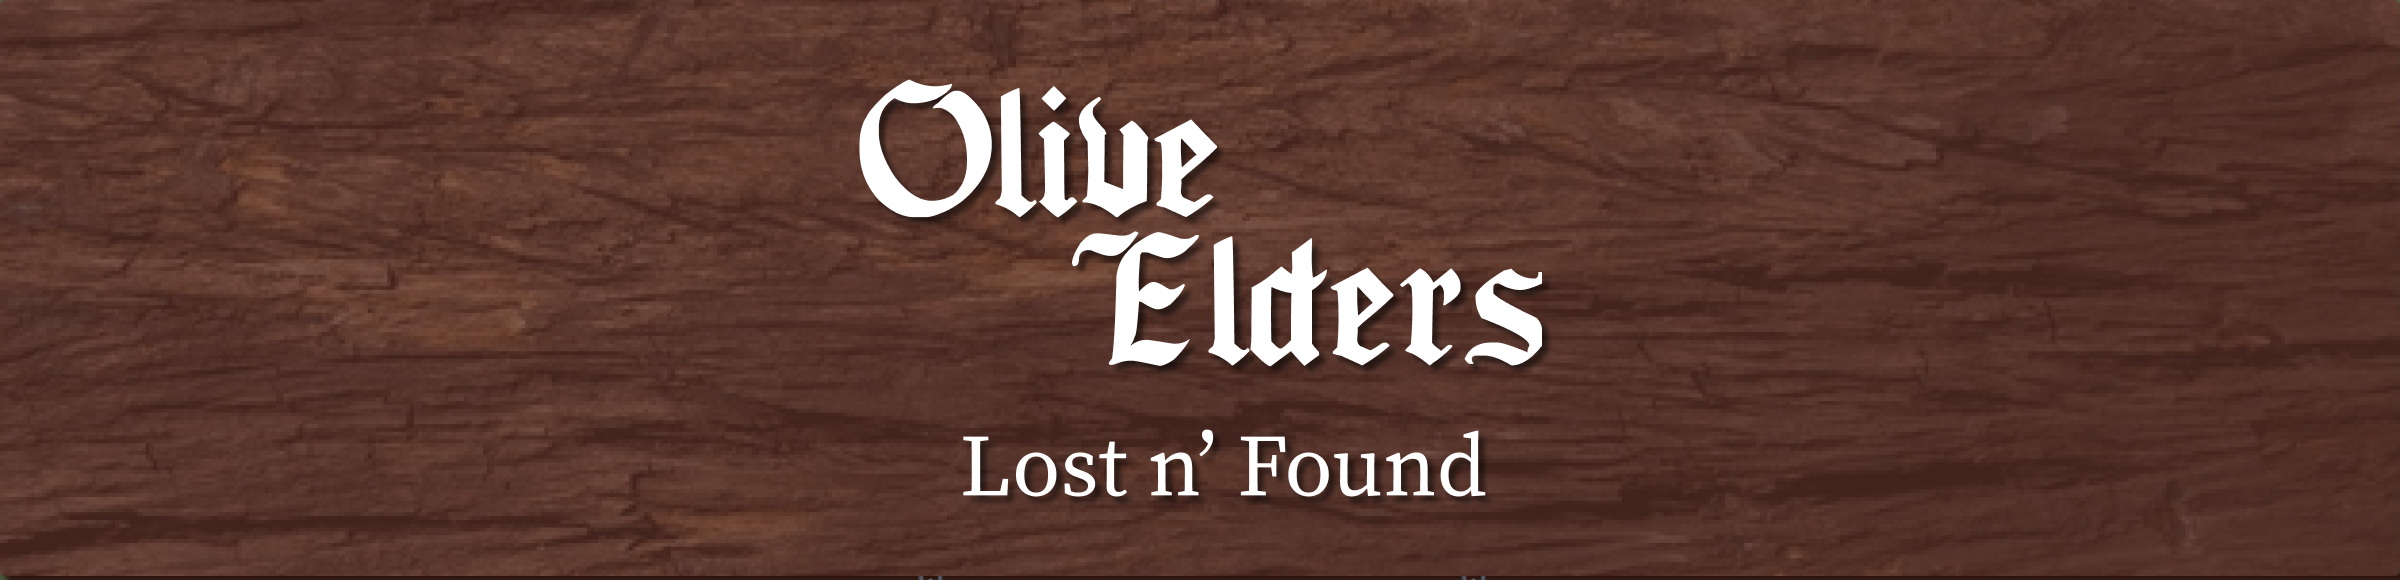 Olive Elders - Lost 'N Found